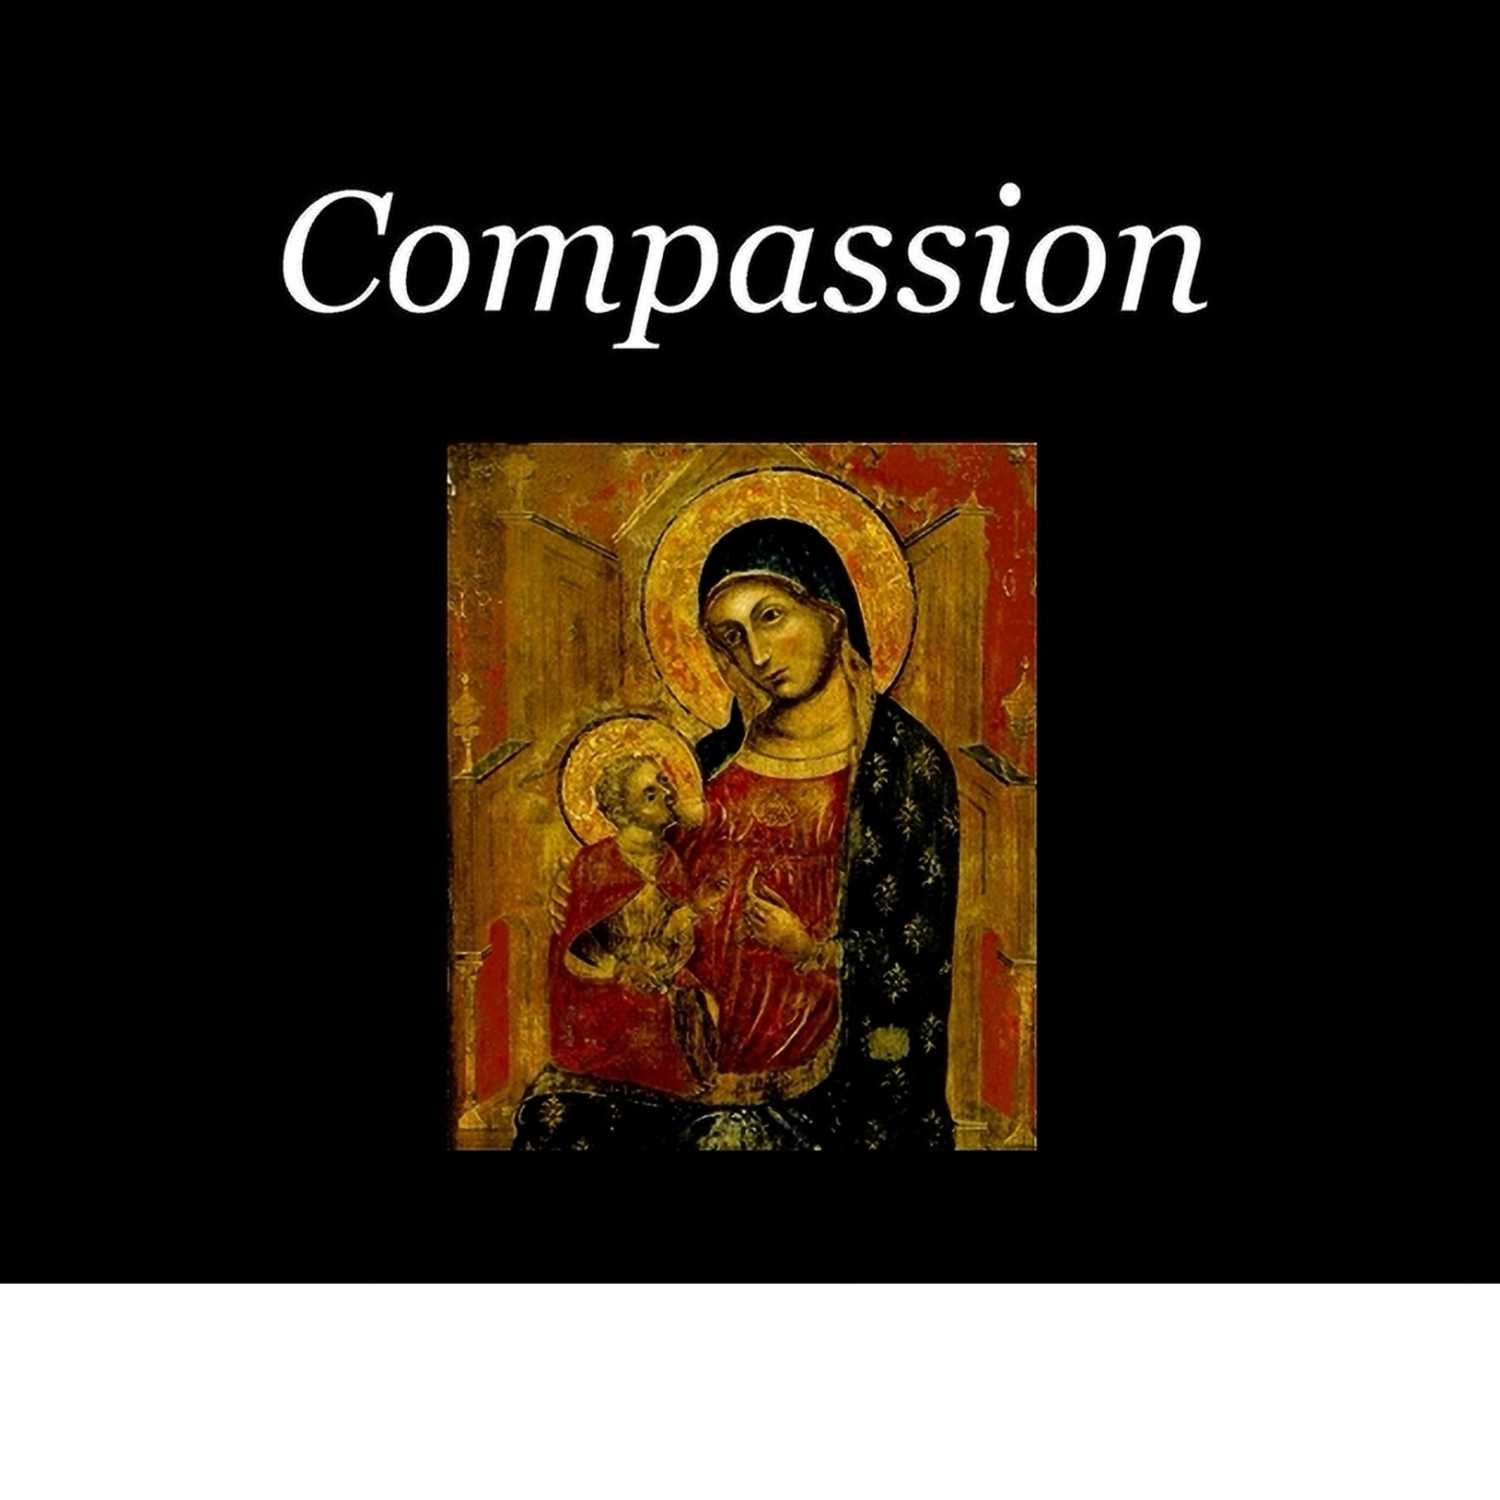 Compassion Nov. 19th, 2021